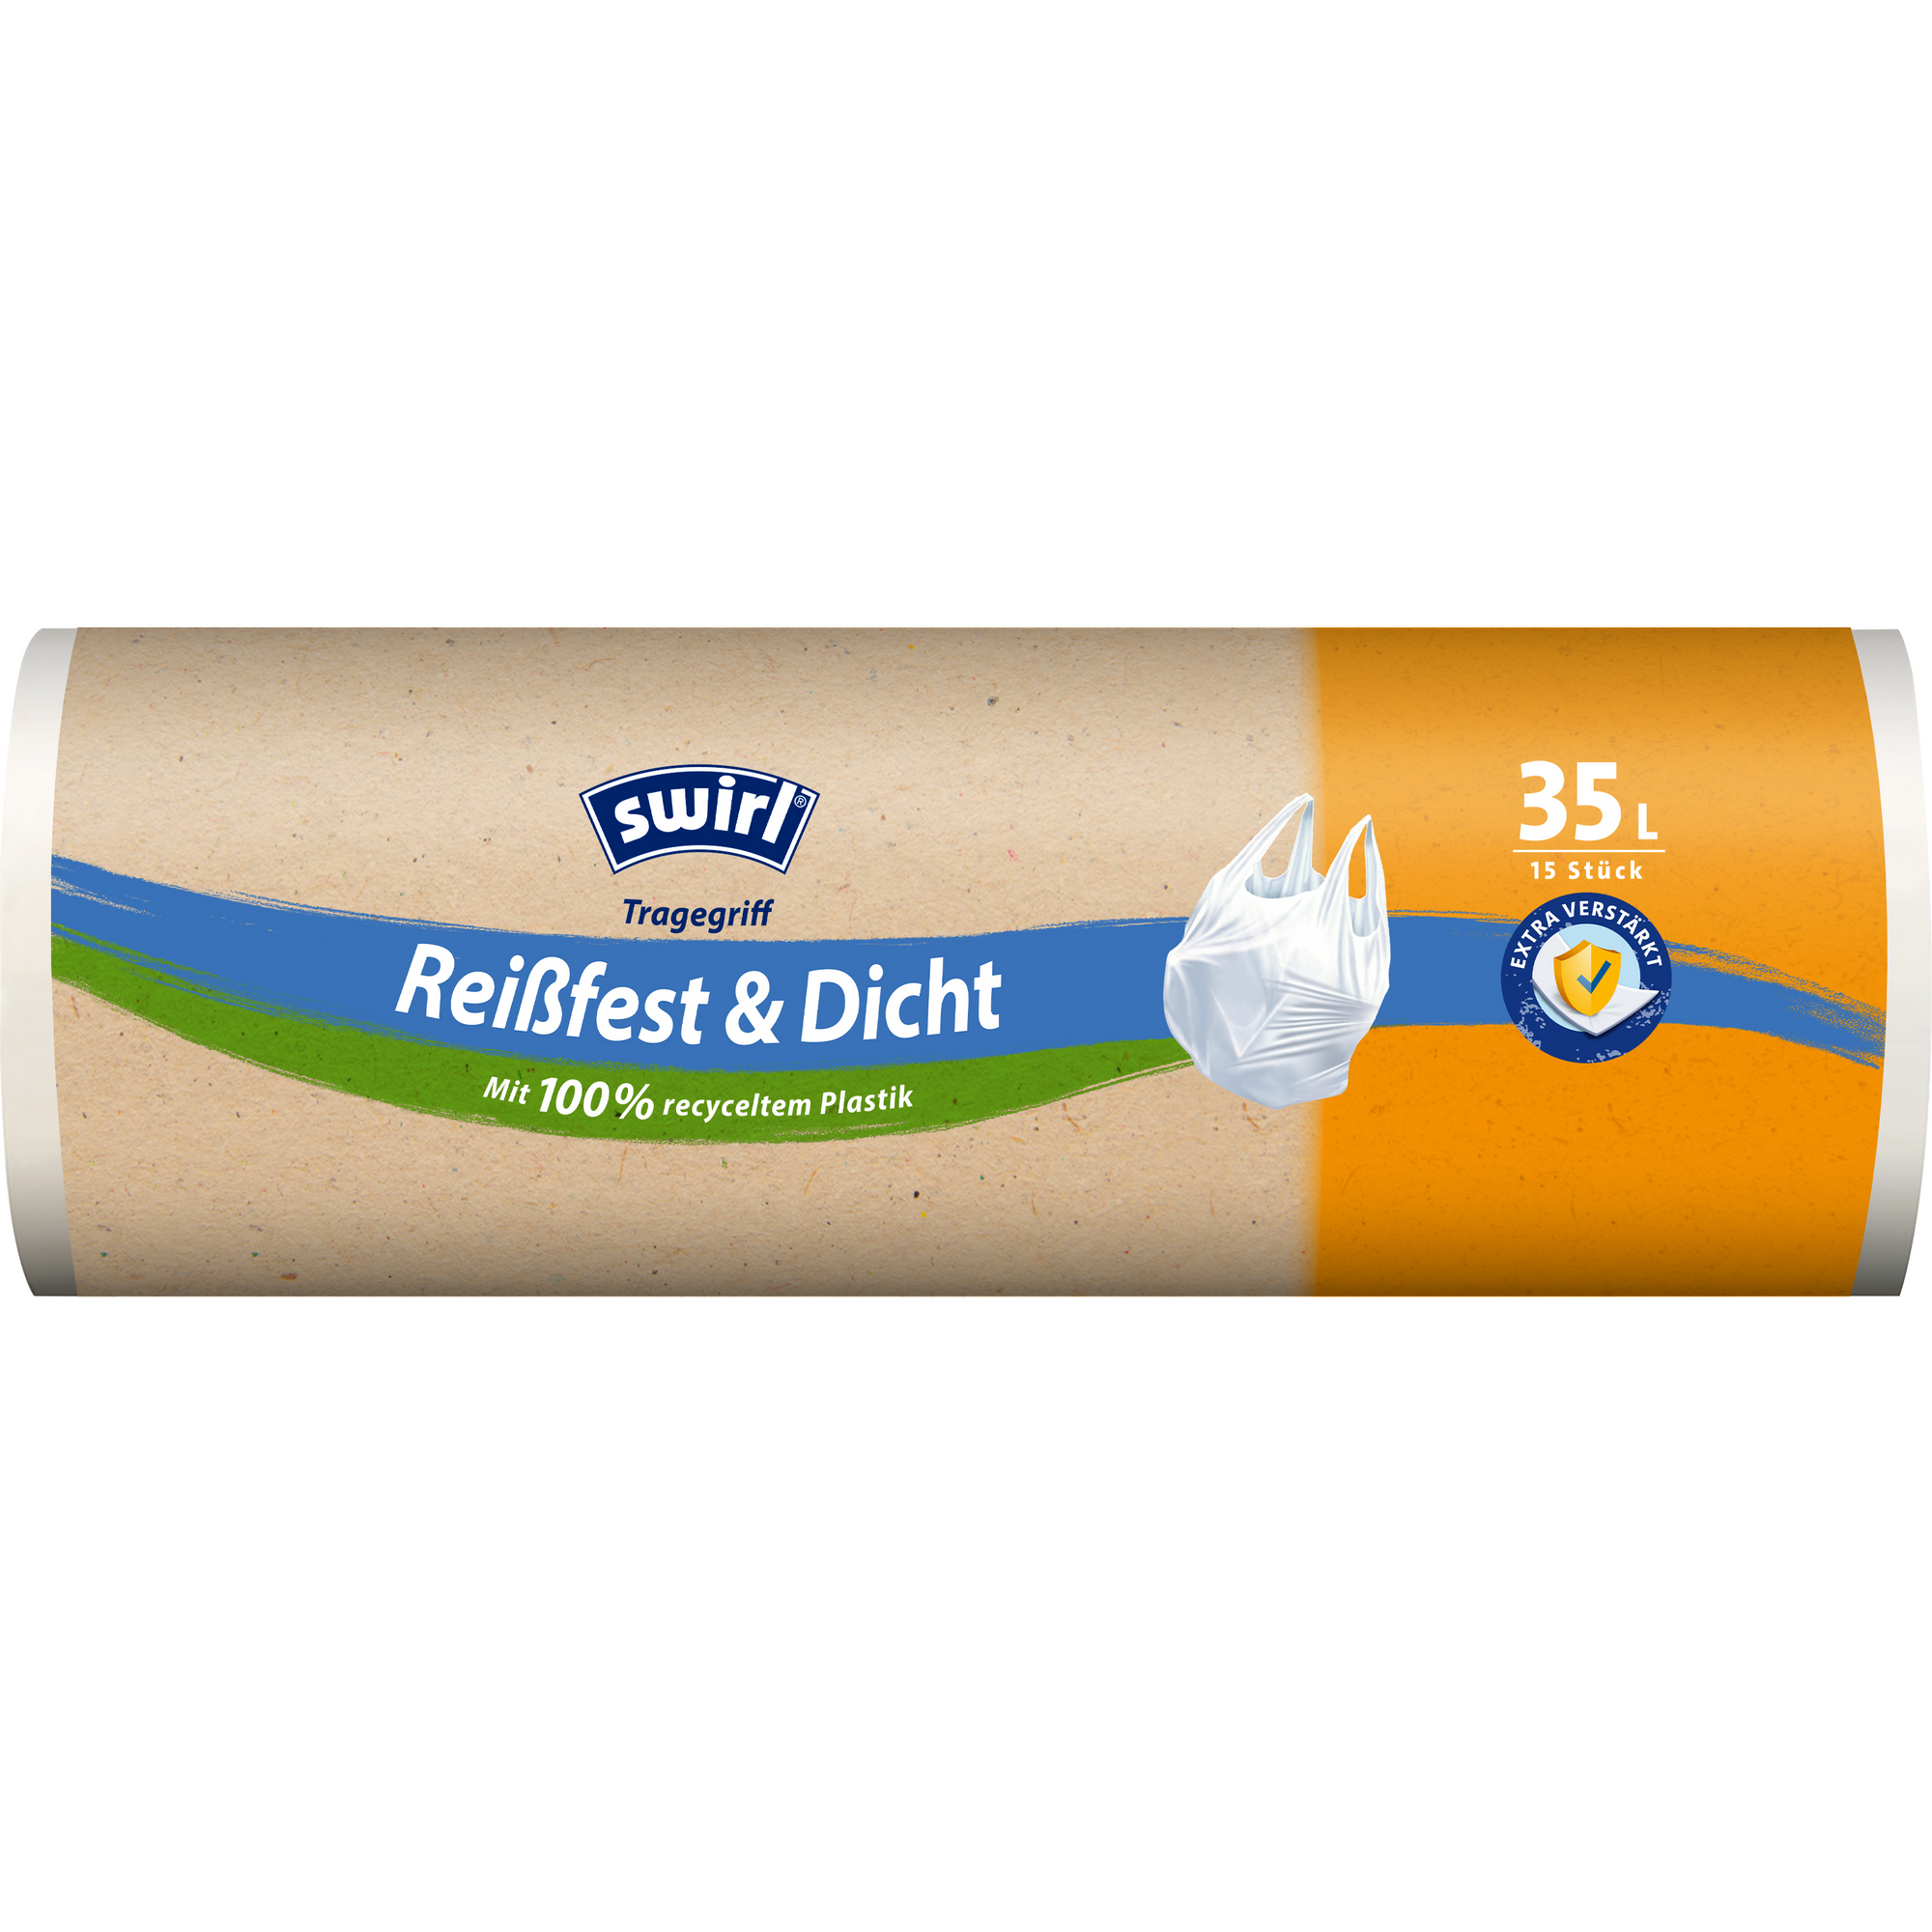 Müllbeutel 'Reißfest & Dicht' mit Tragegriffen 35 l 15 Stück + product picture